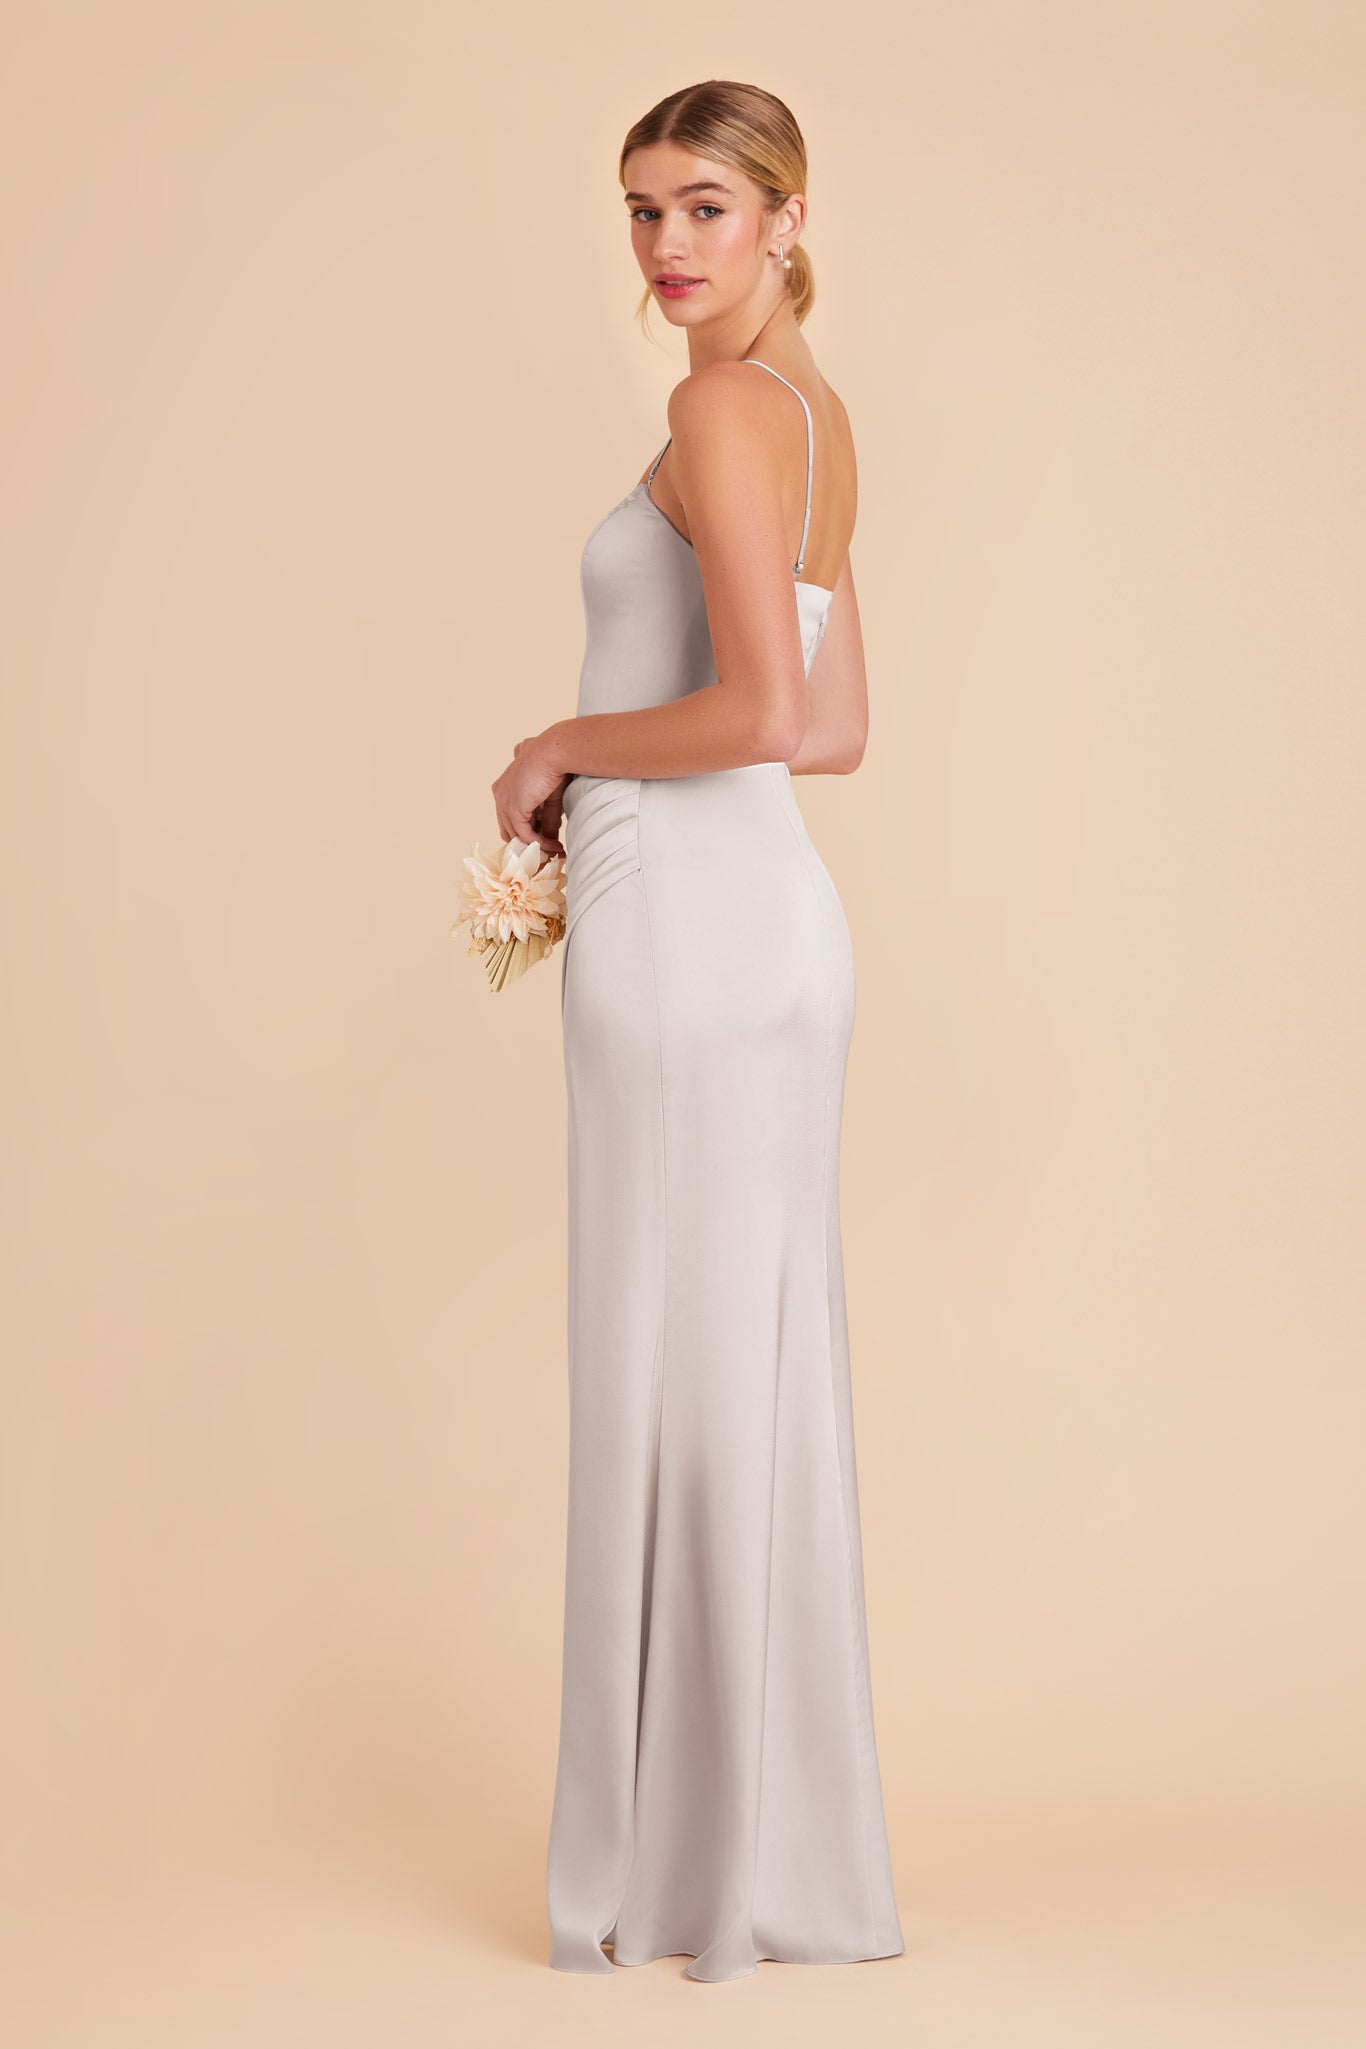 Platinum Anne Matte Satin Dress by Birdy Grey